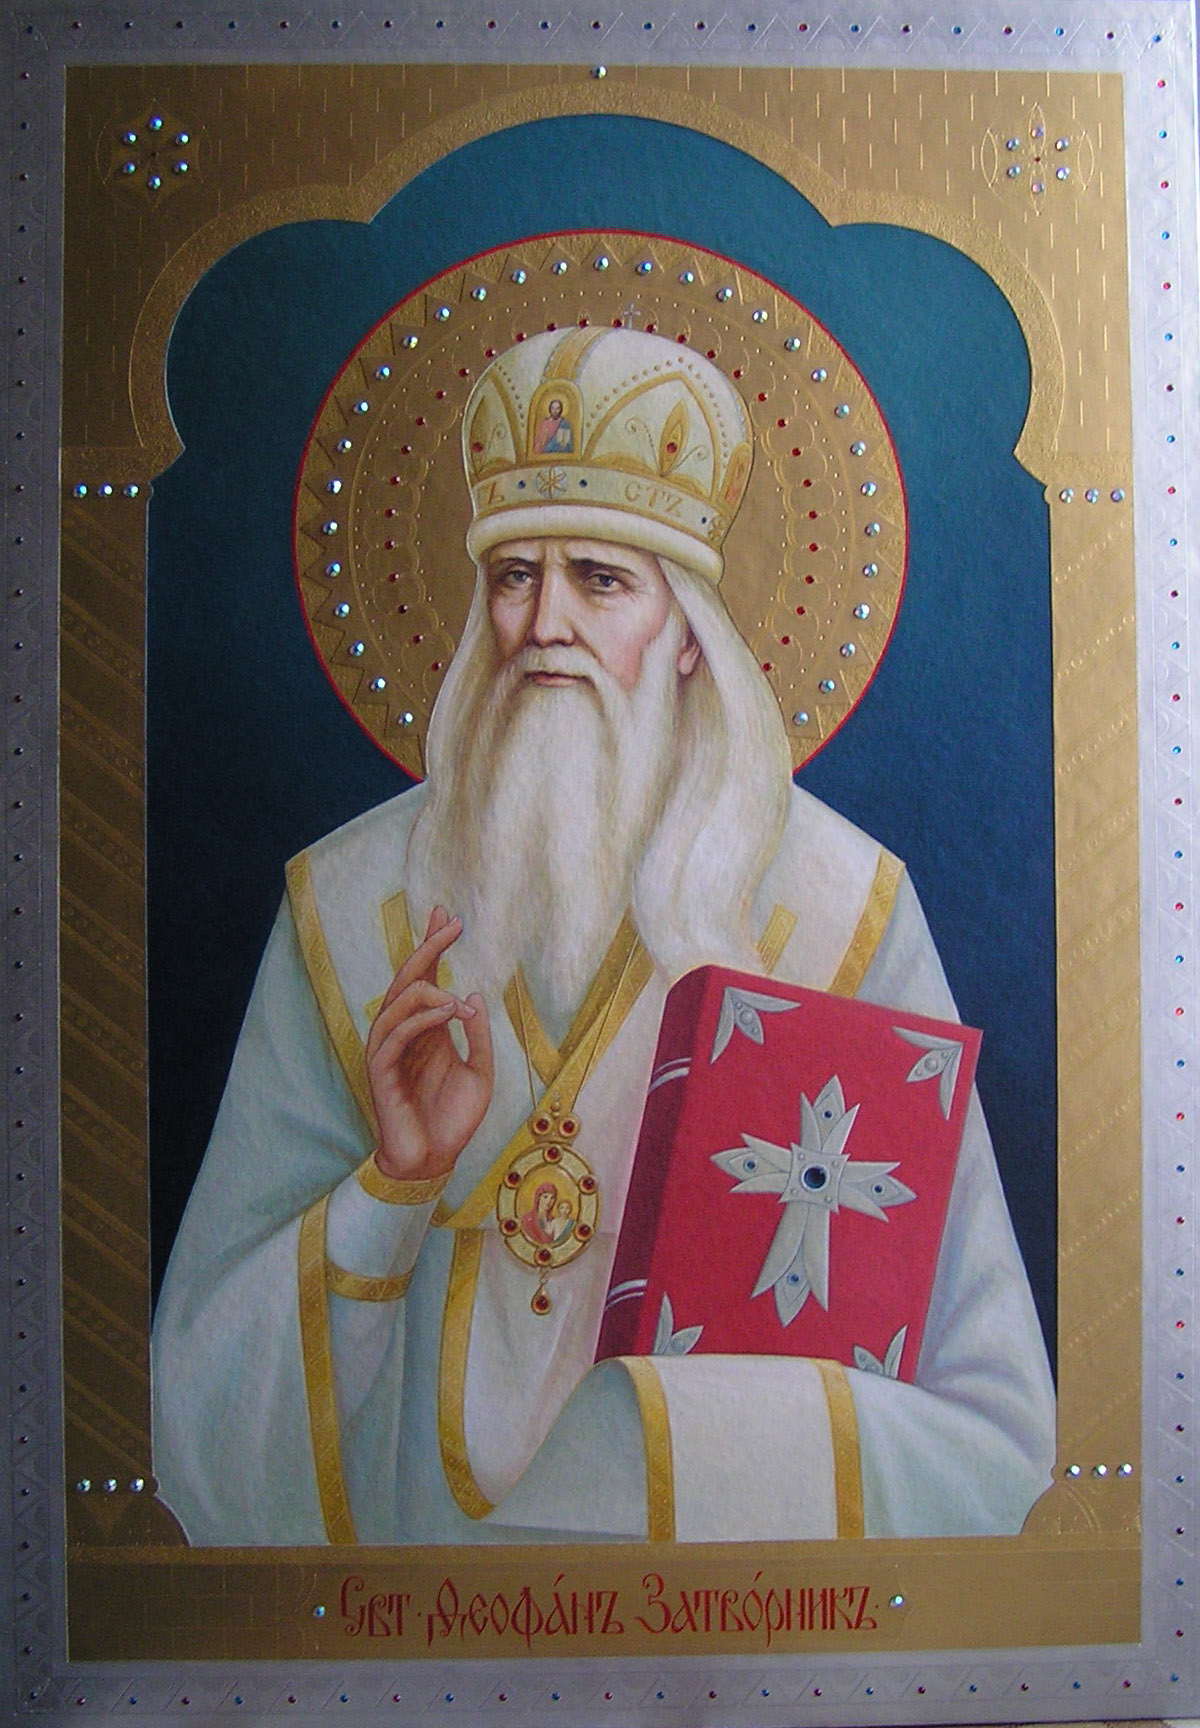 Святитель Феофа́н Затворник, Вышенский, епископ